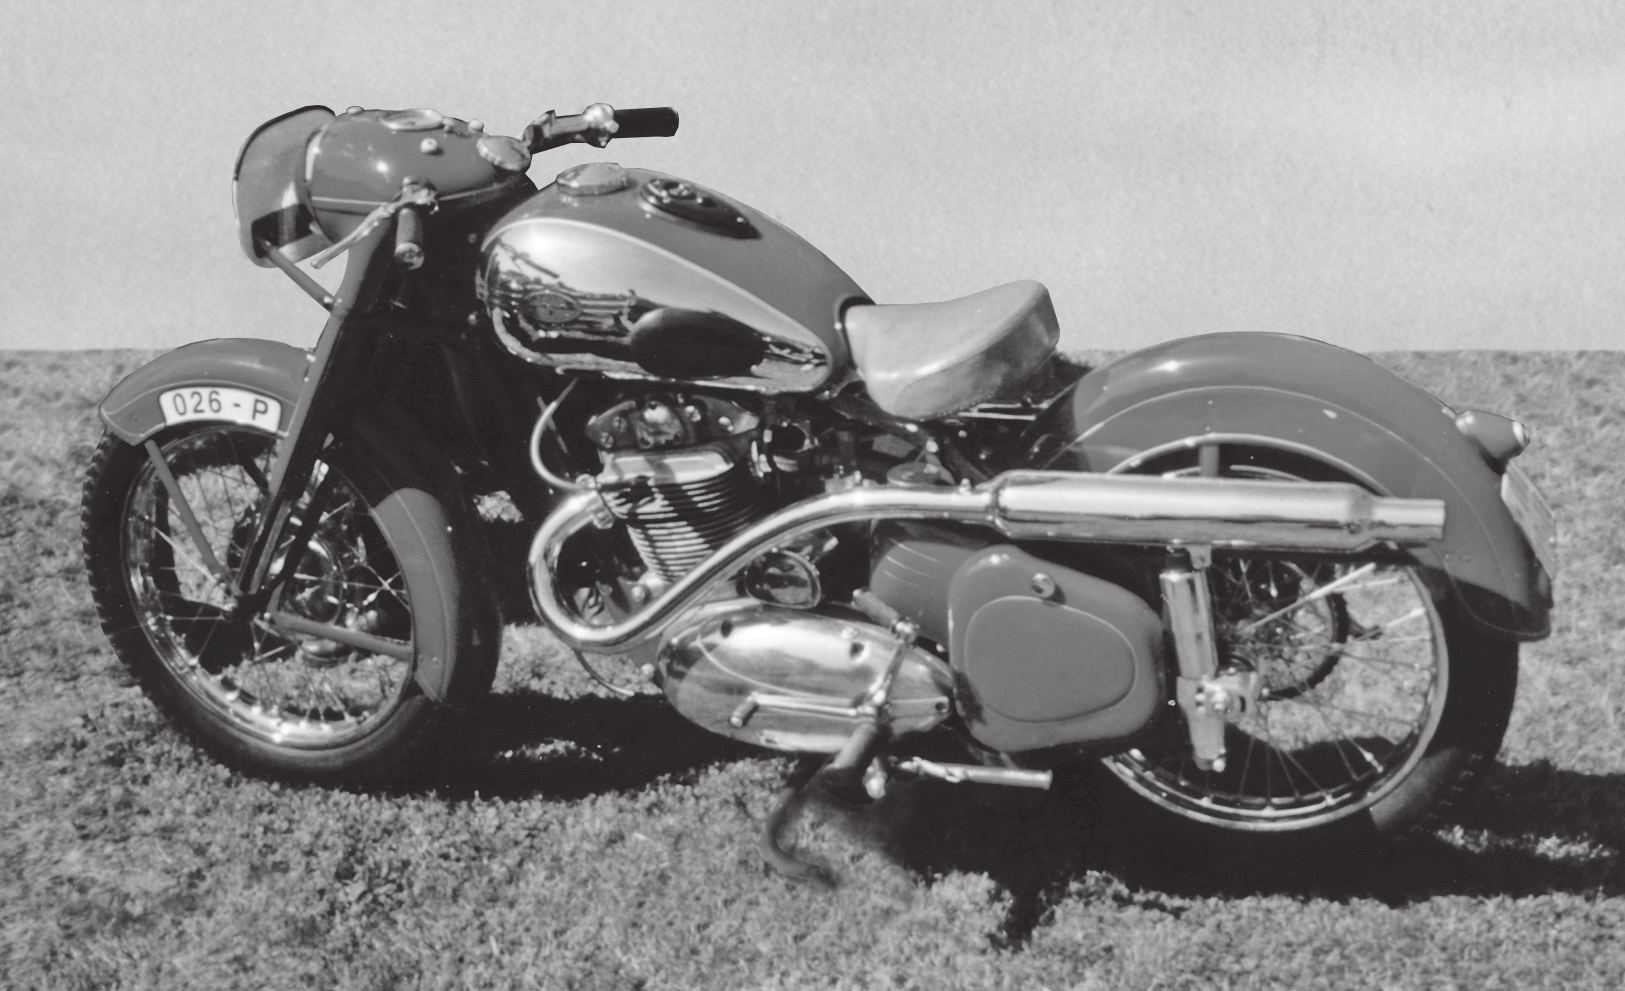 JAWA 500 OHC Nepříliš kvalitní fotografi e je převzata z časopisu Motocykl z roku 1950 a zachycuje originální podobu stroje s označením 026-P startujícího na Heinzově soutěži v roce 1950.